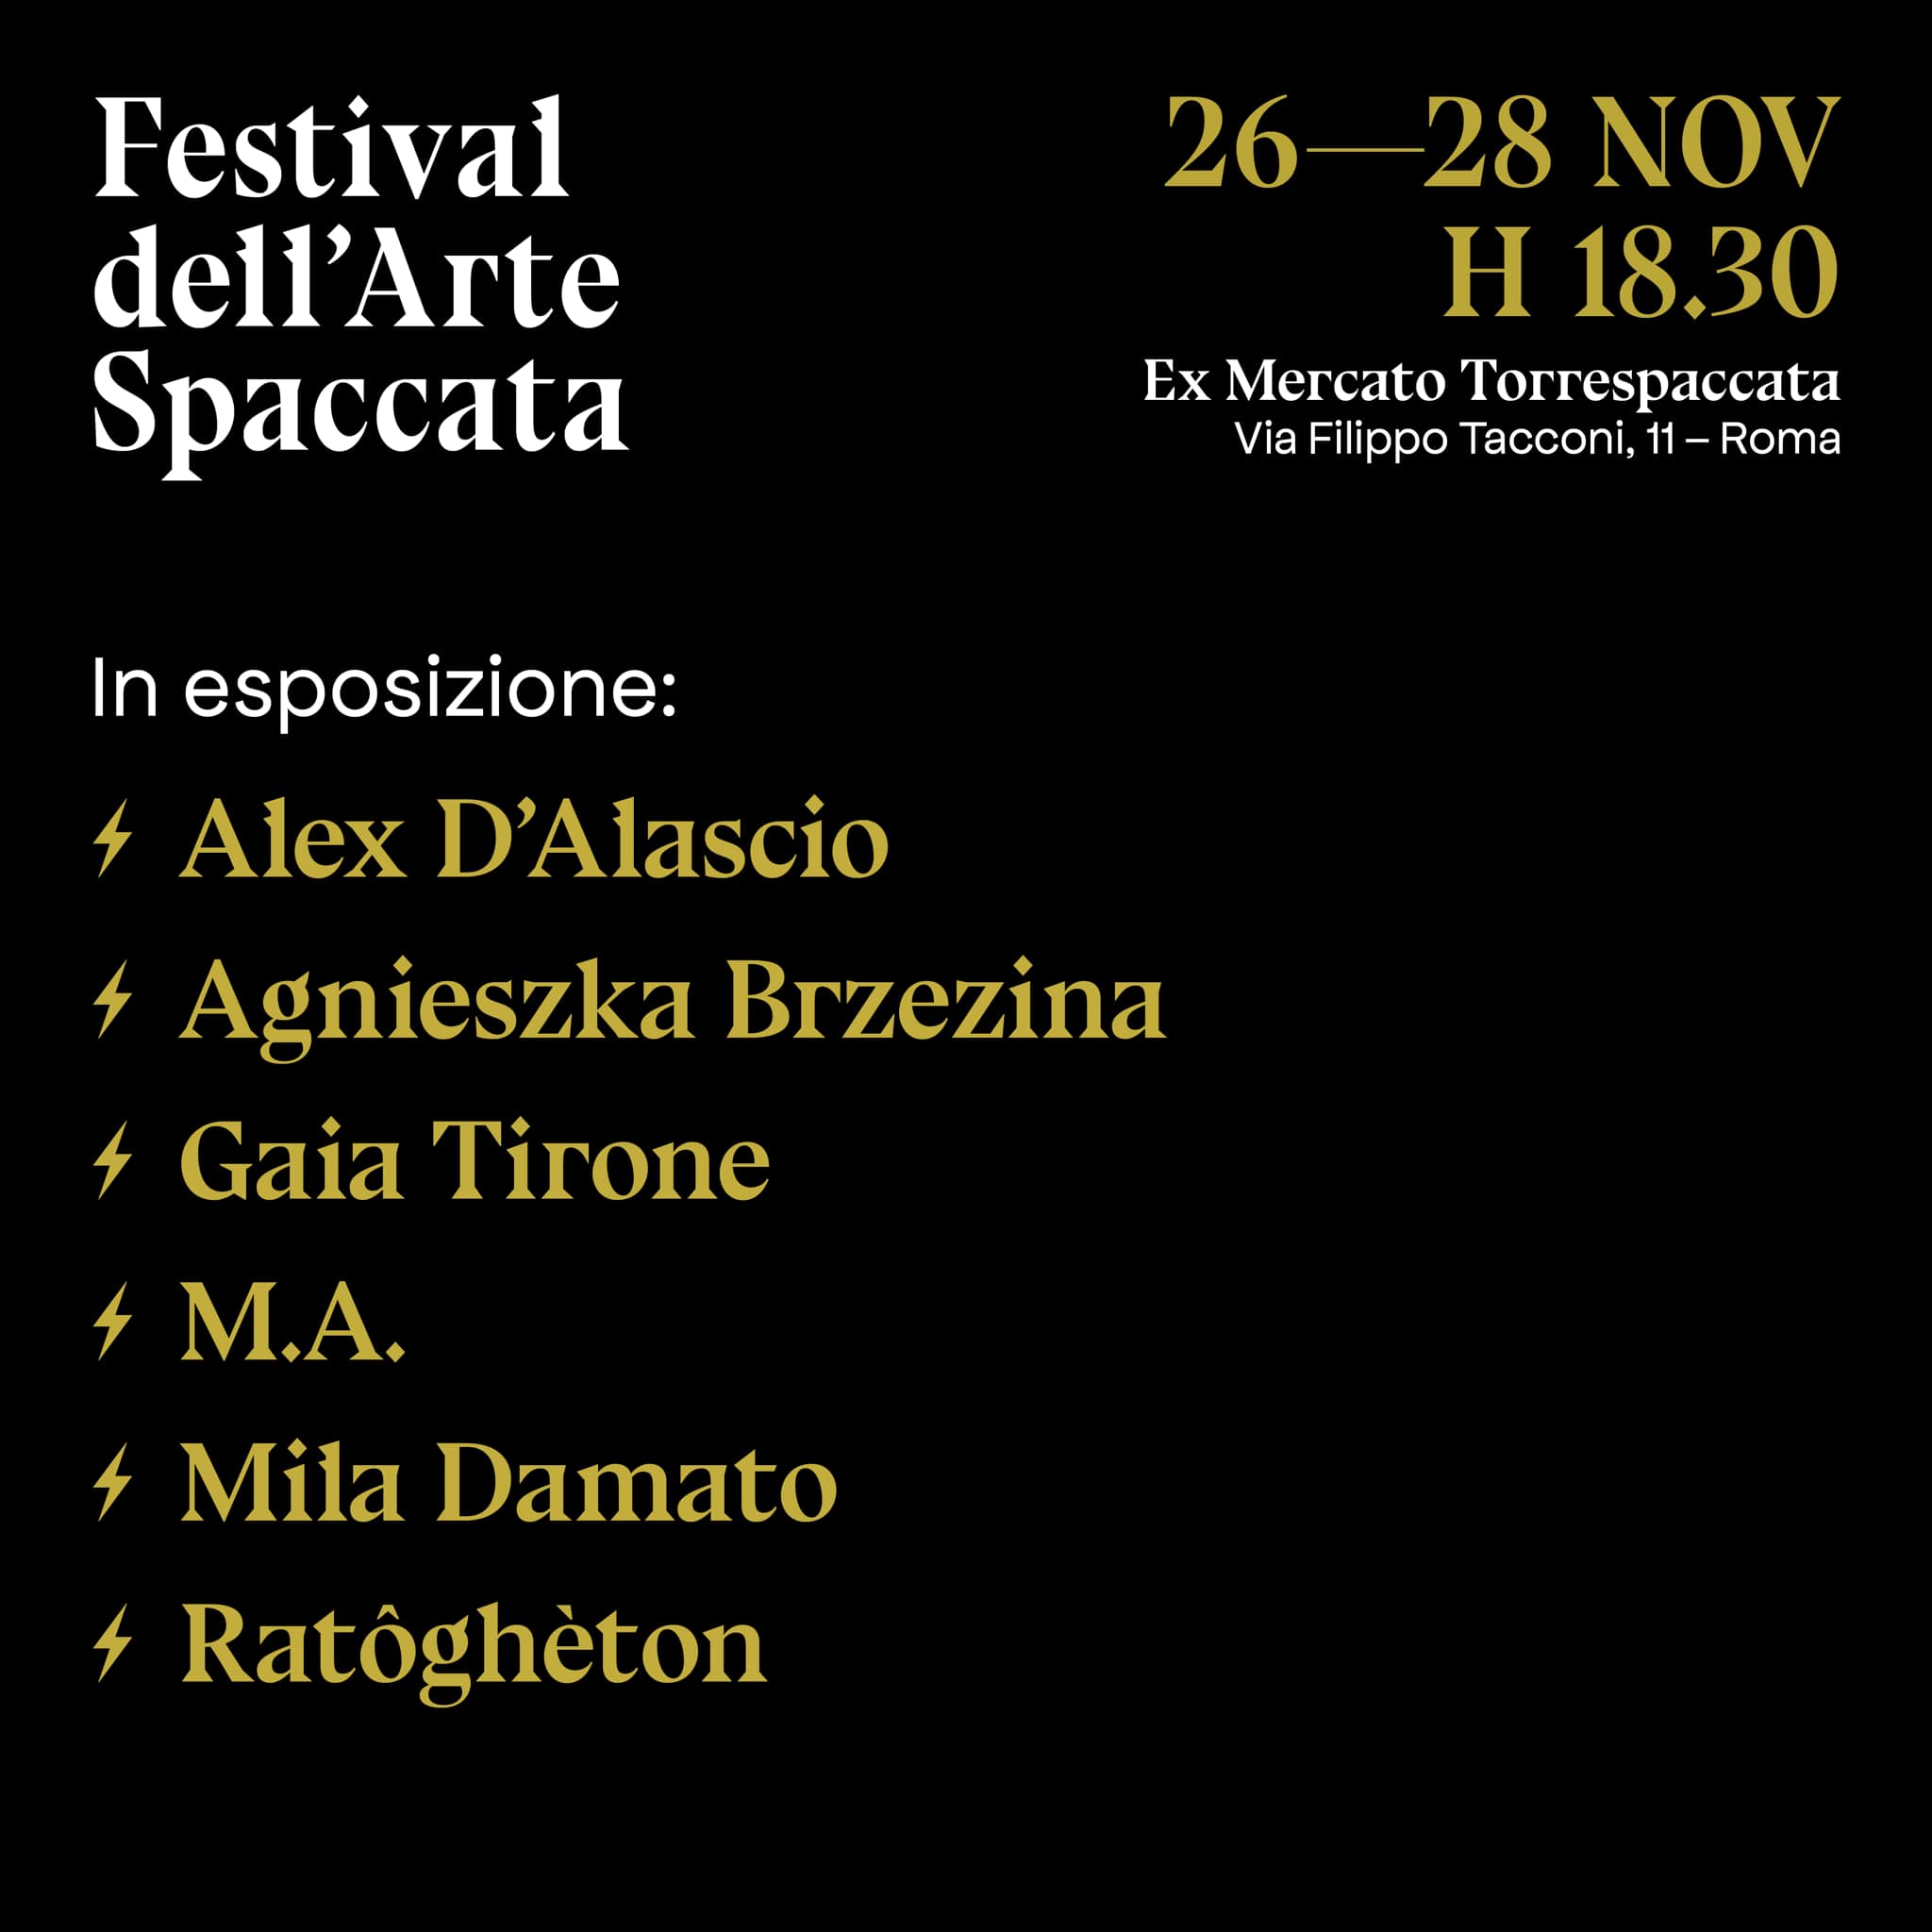 Festival dell'Arte Spaccata, Arti visive e Musica, Artisti, 26-28 novembre 2021